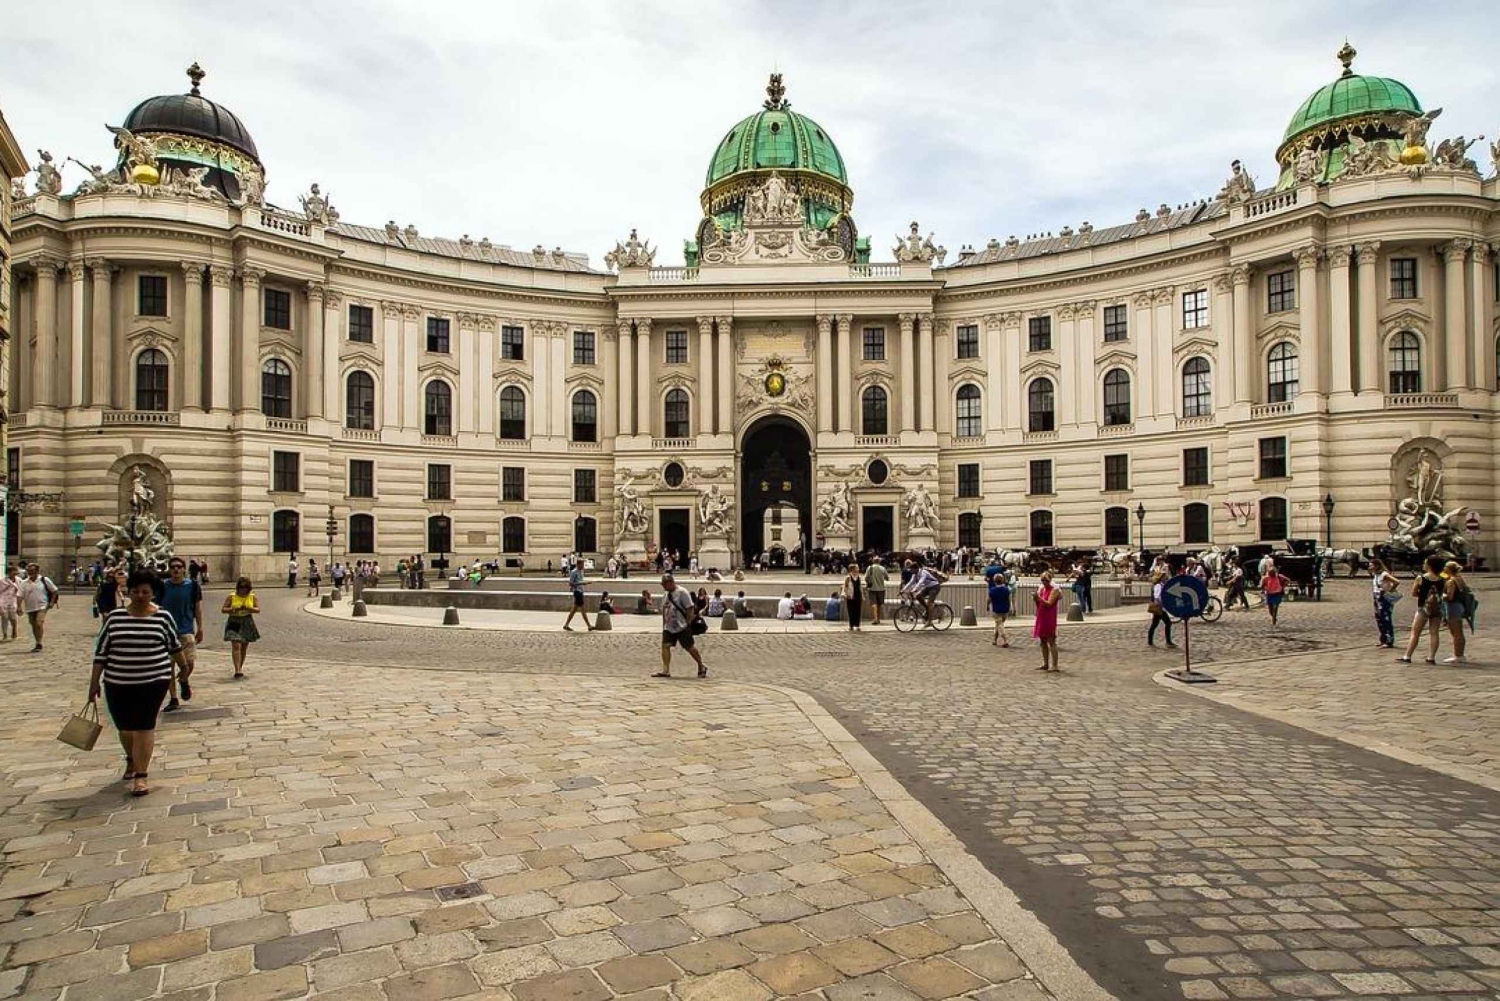 Excursão particular a Hofburg, Museu Sisi e Apartamentos Imperiais